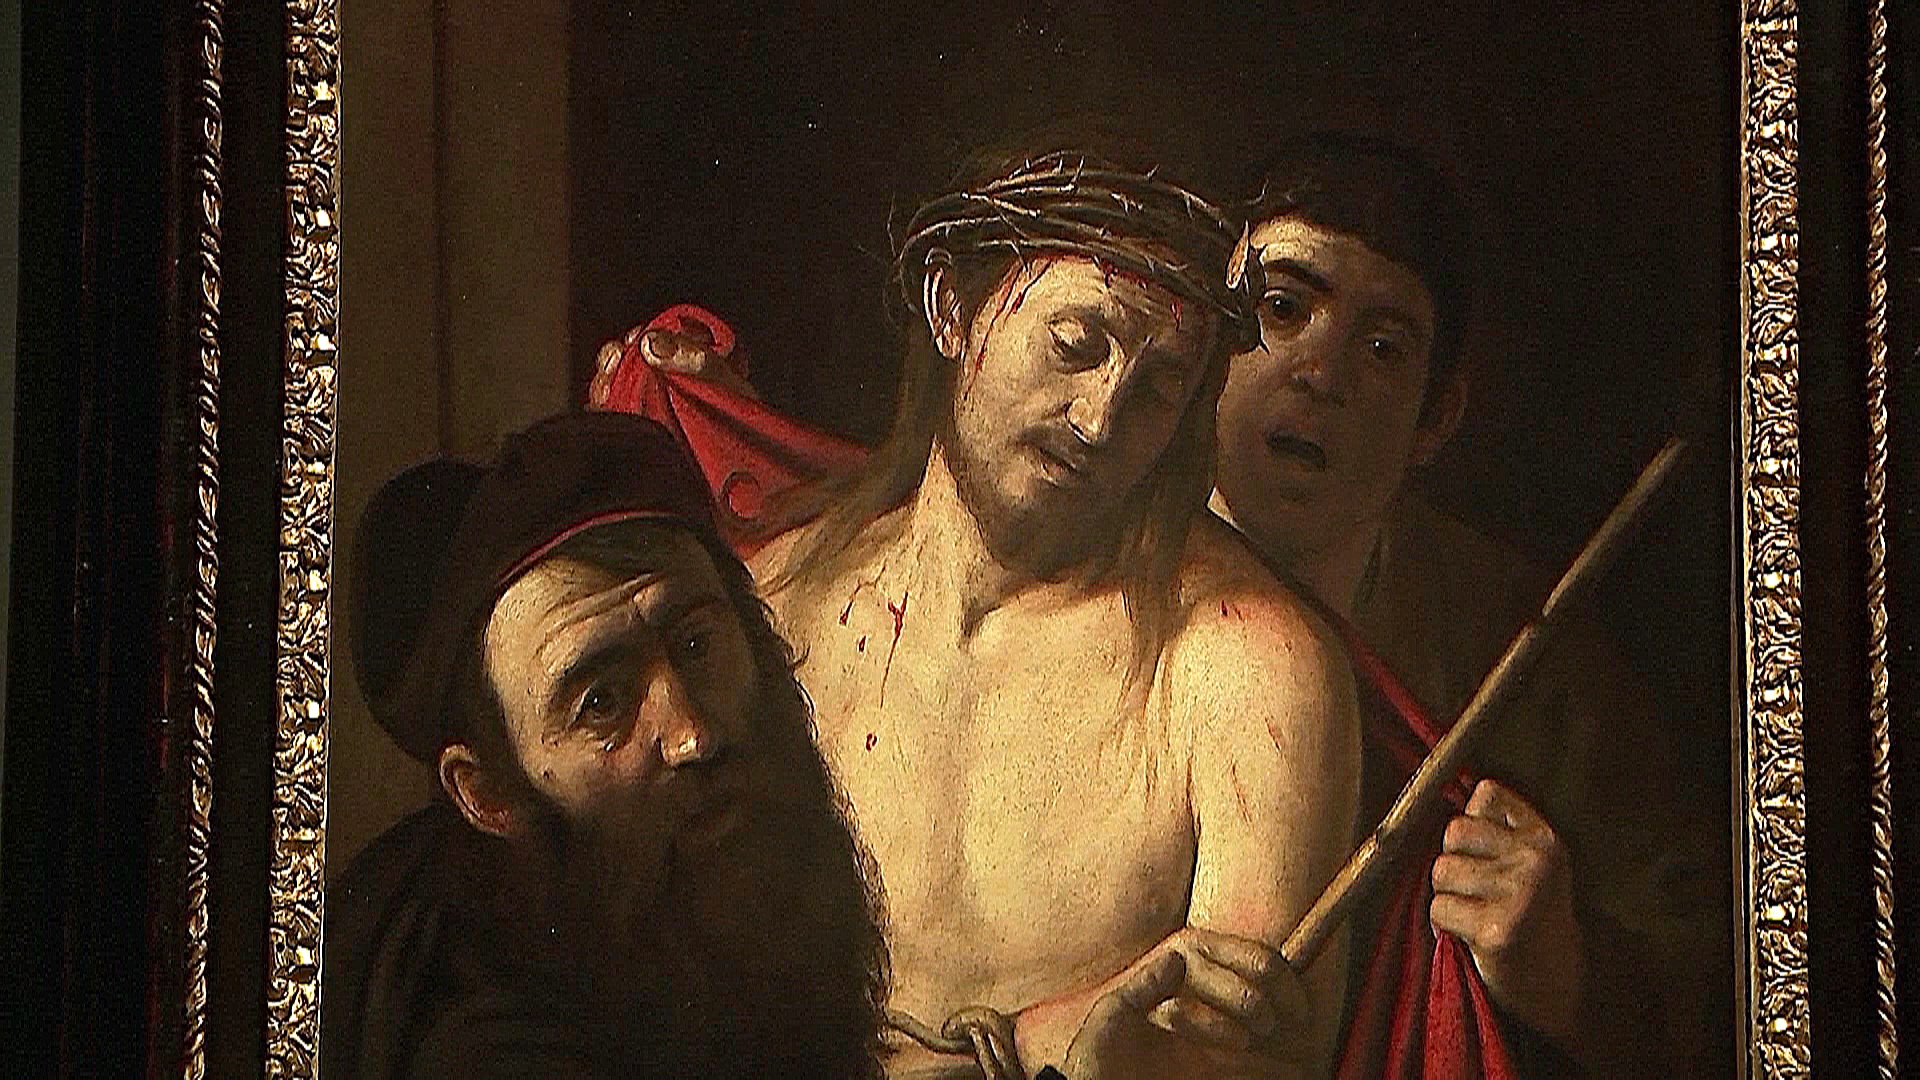 Некогда утерянную картину Караваджо представили в испанском музее Прадо